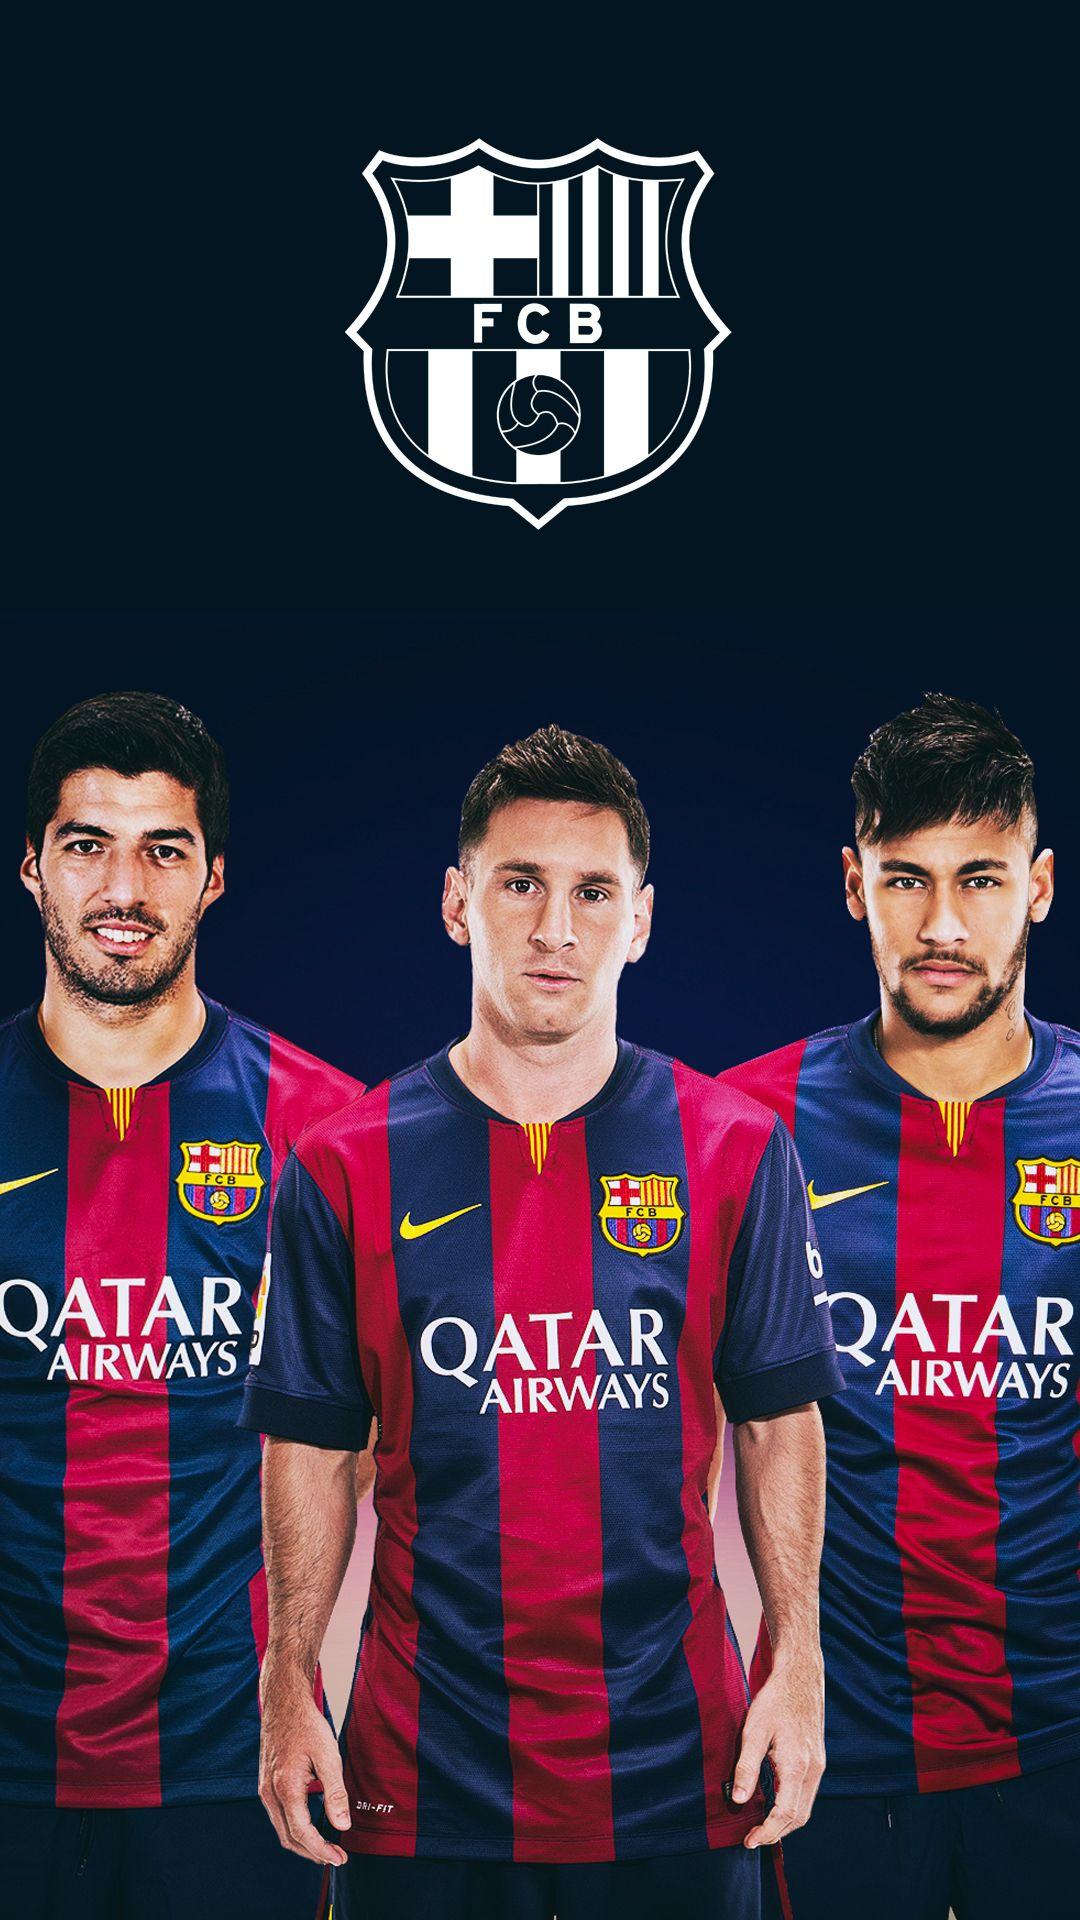 Fc Barcelona Wallpaper. Excellent FC Barcelona Wallpaper. LL